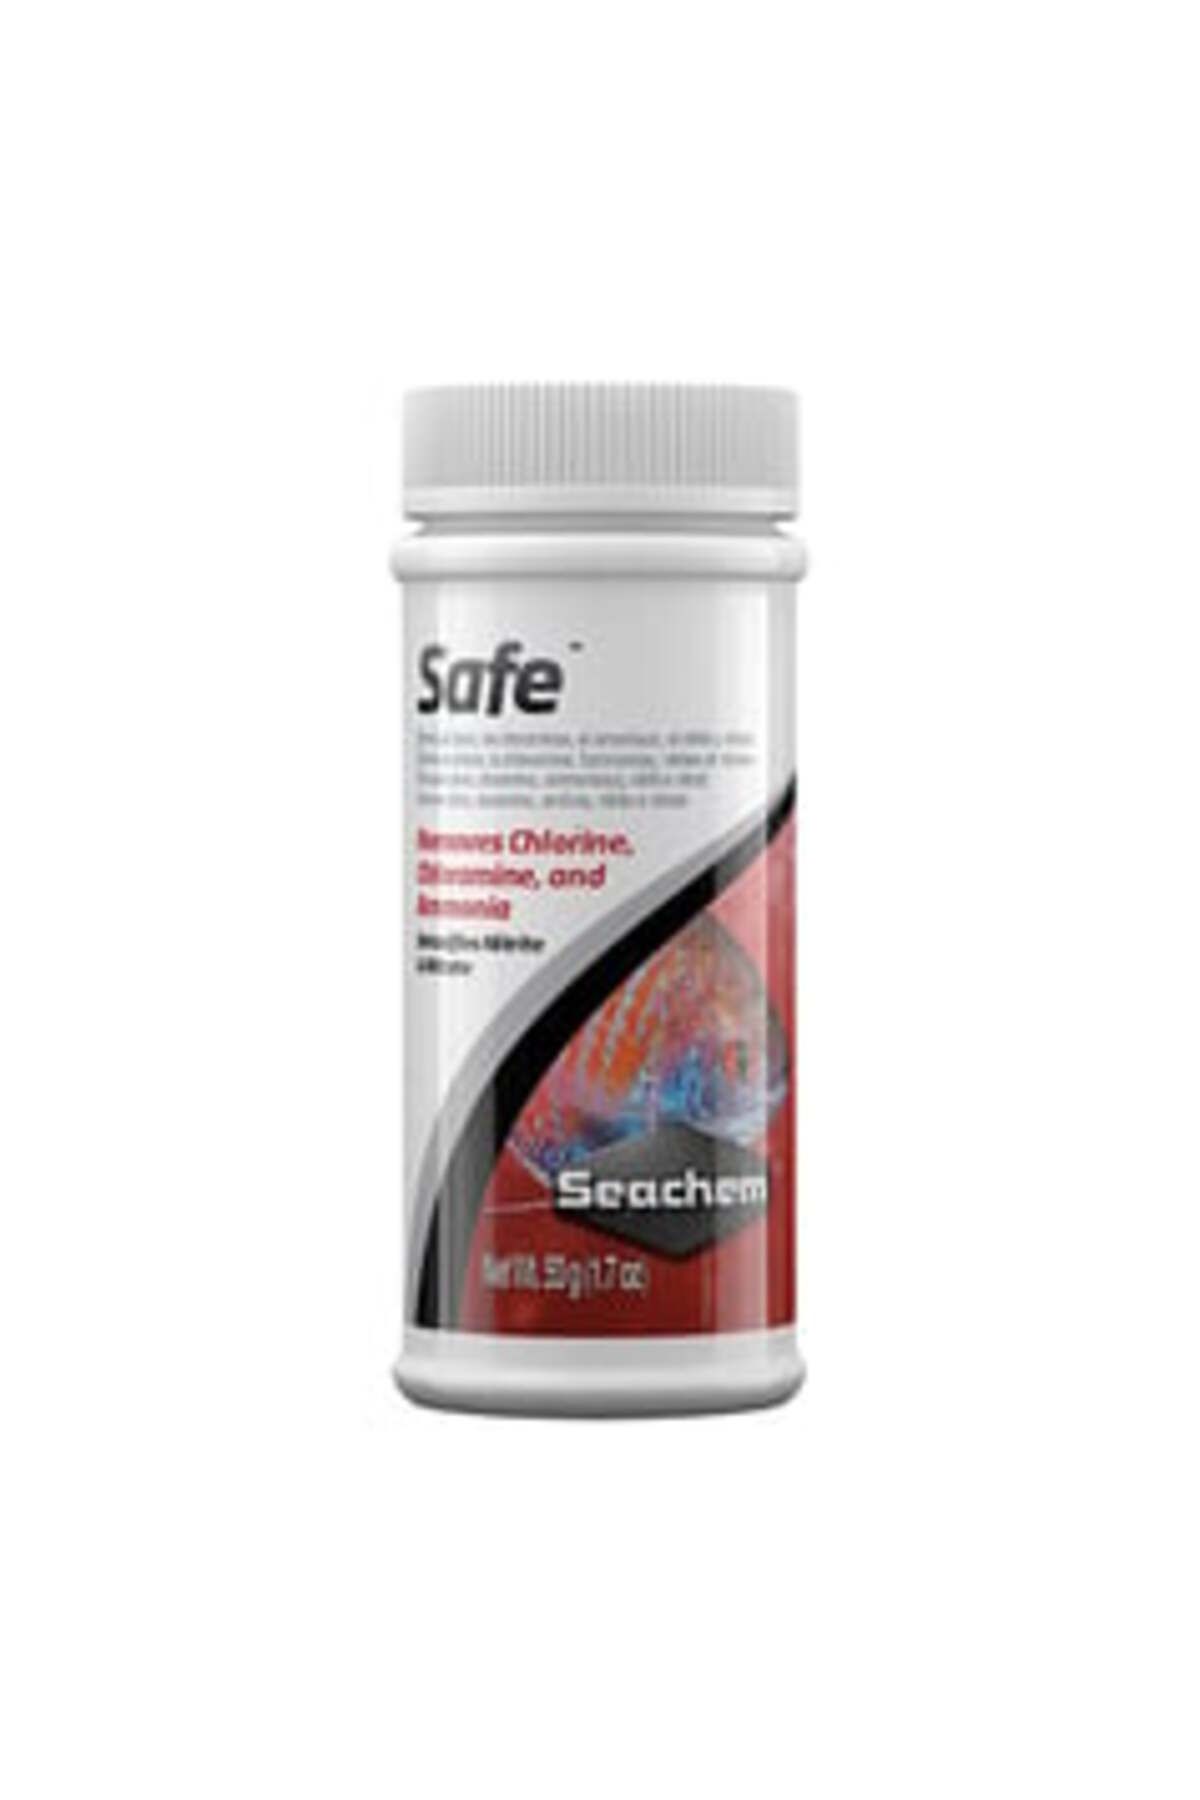 Seachem Safe Akvaryum Balıkları için Klor Giderici ( 2 ADET )